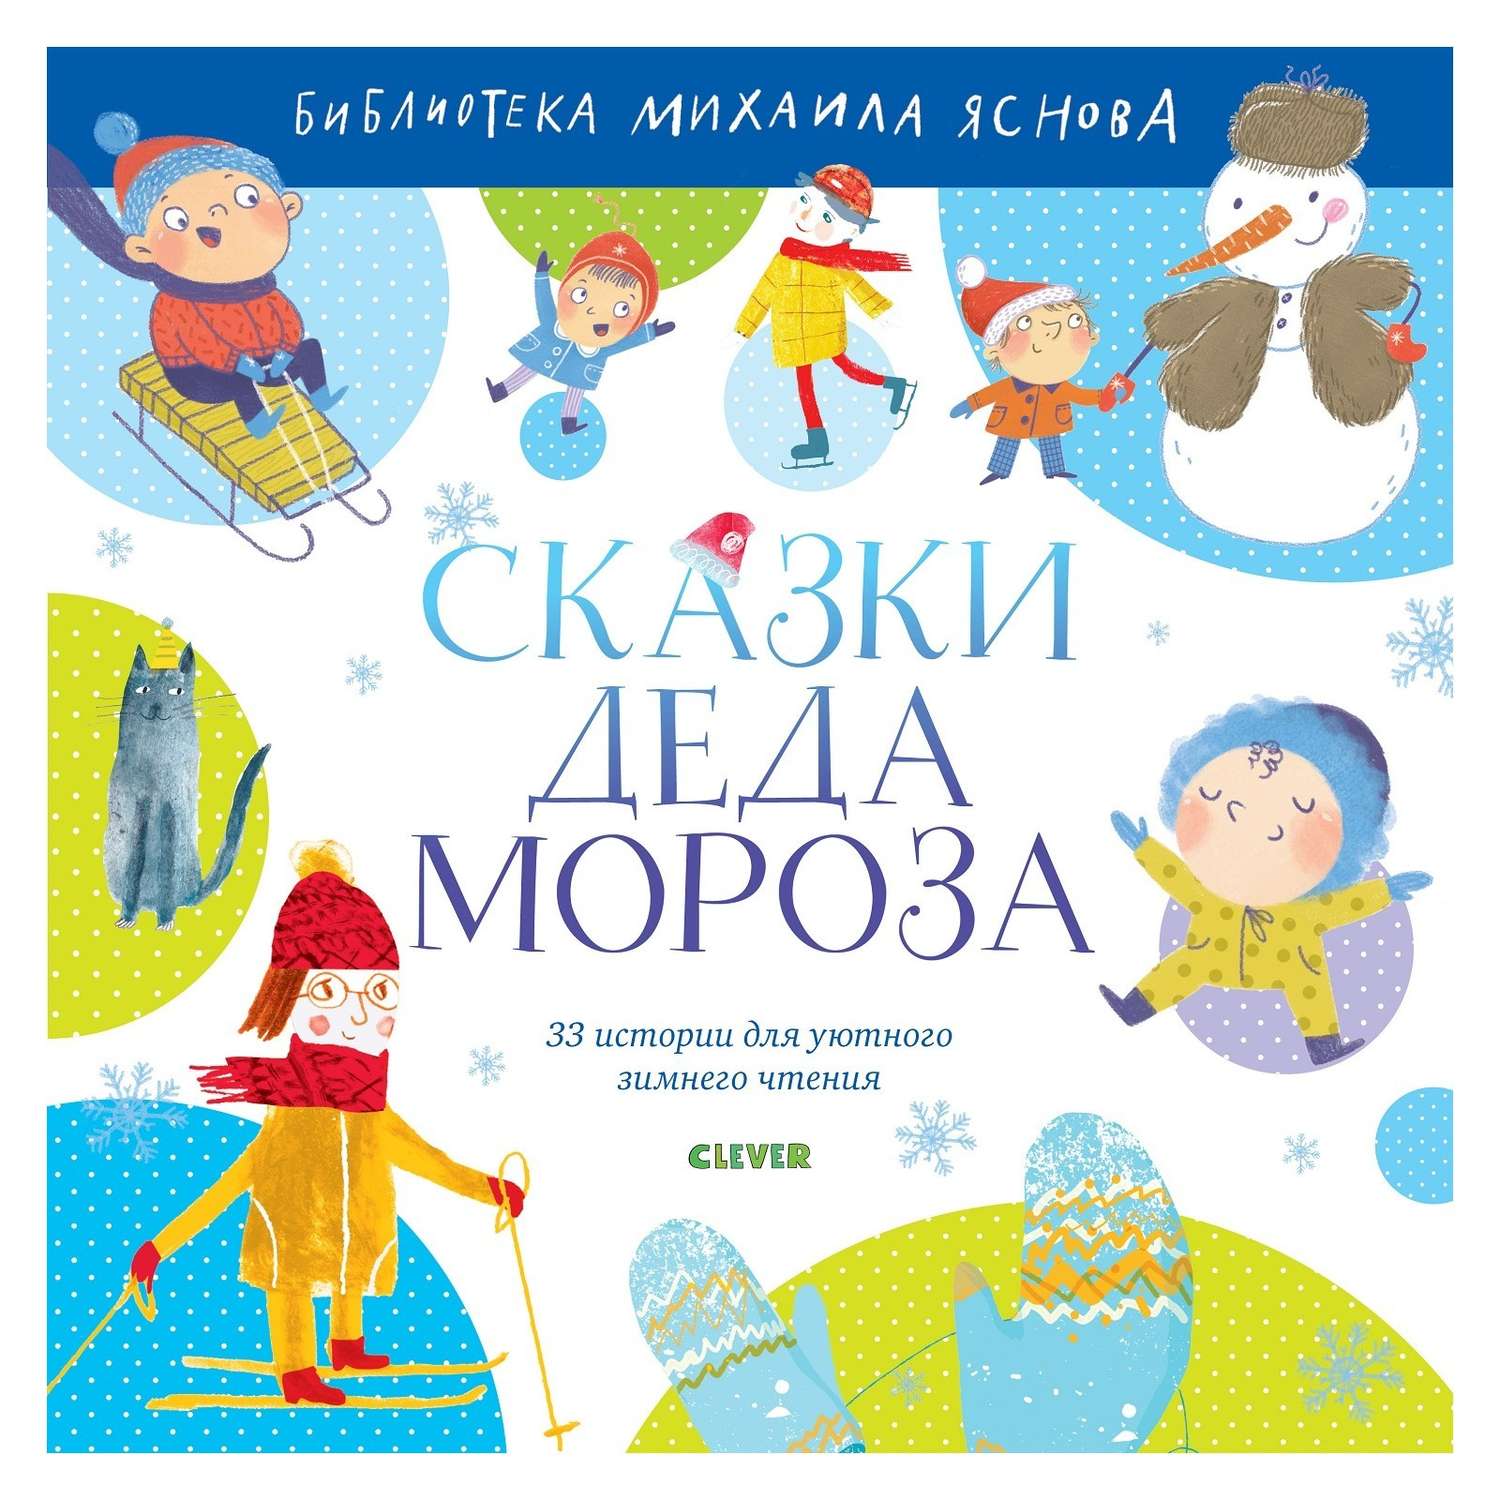 Книга Clever Библиотека Михаила Яснова Сказки Деда Мороза - фото 1